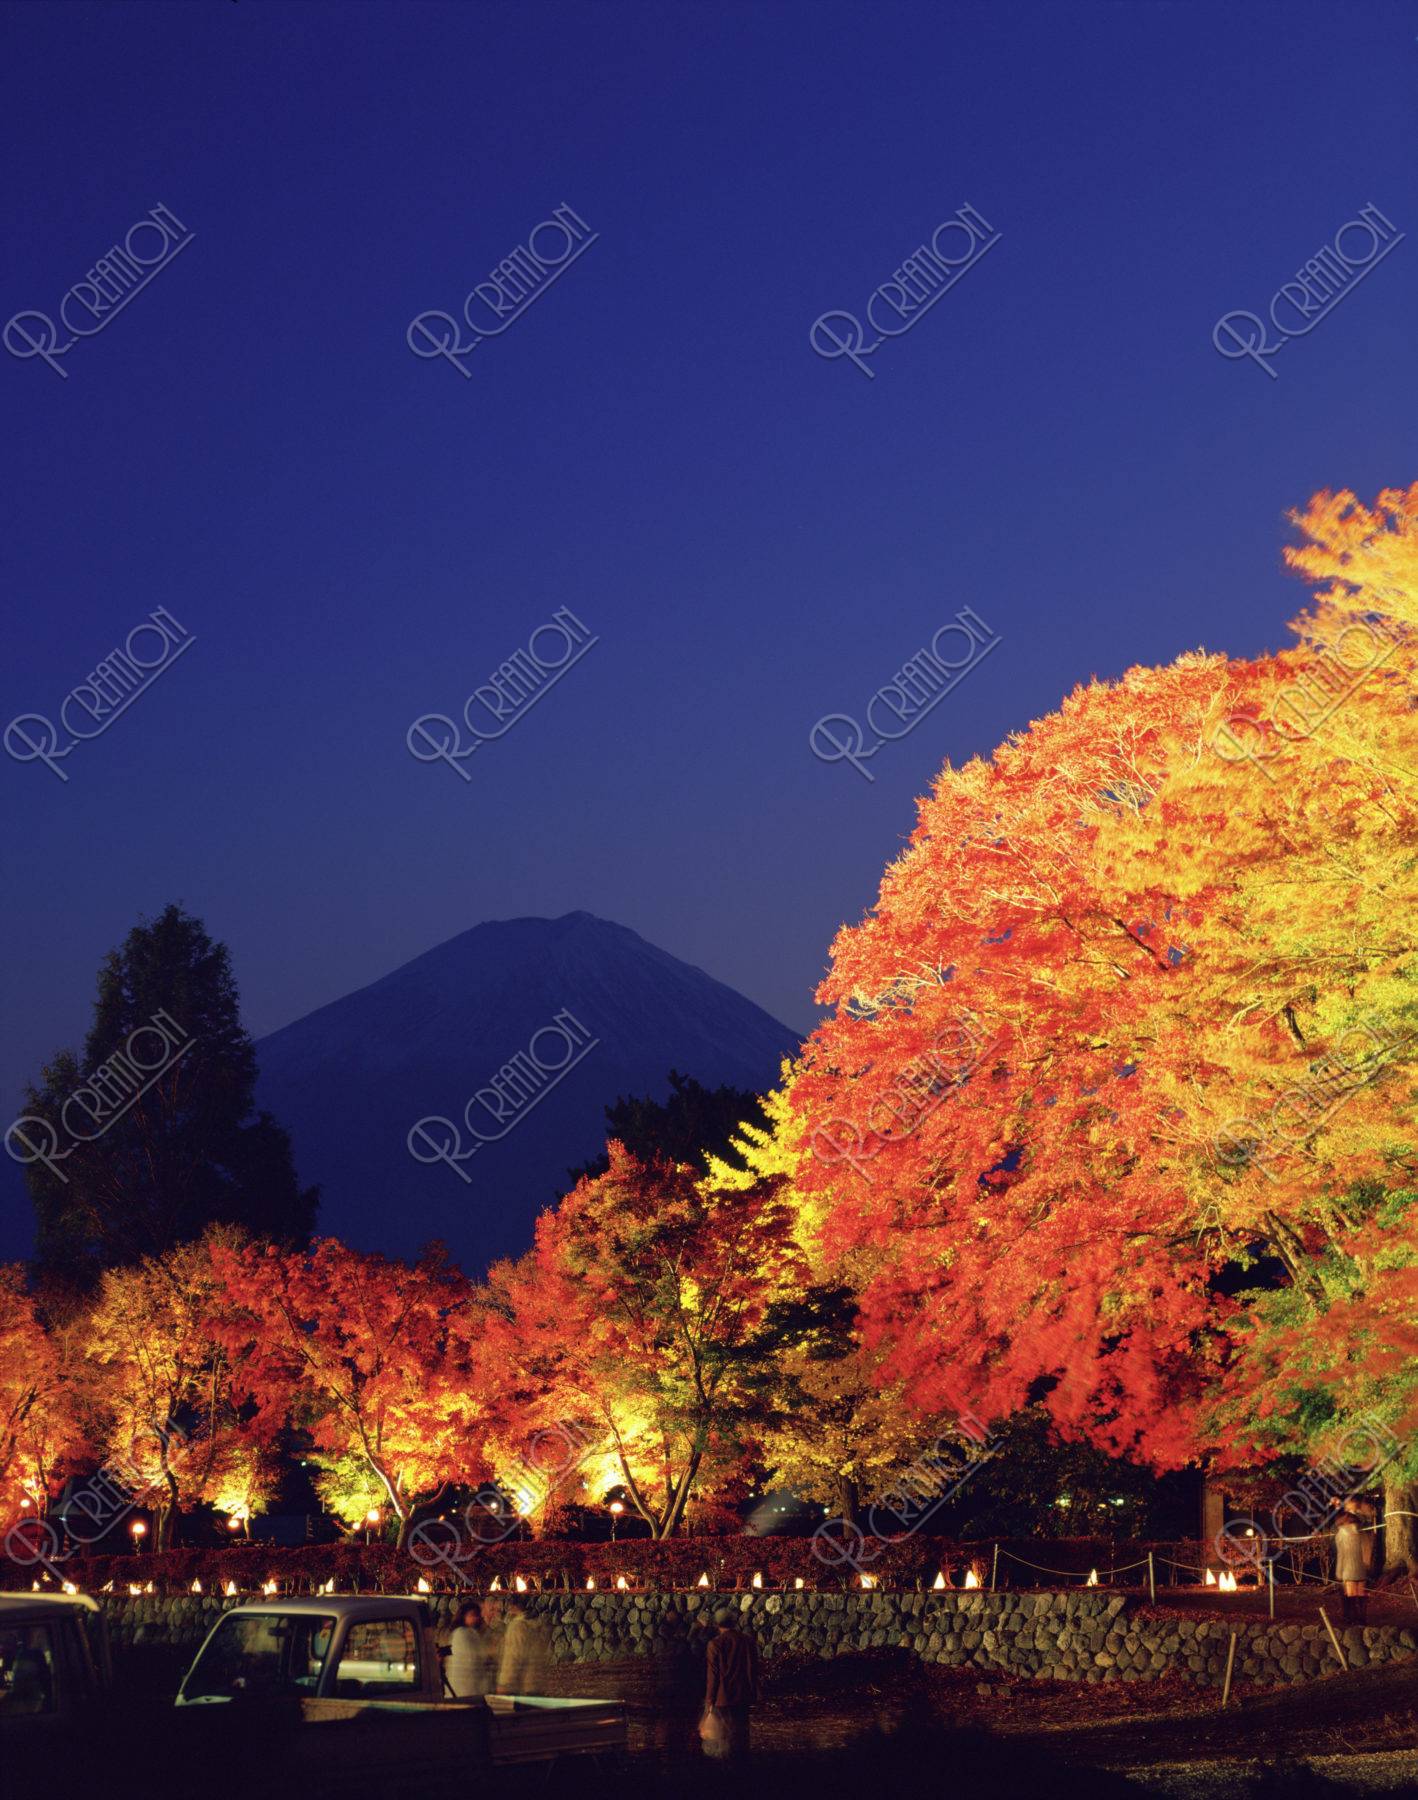 紅葉回廊のライトアップと富士山の夜景